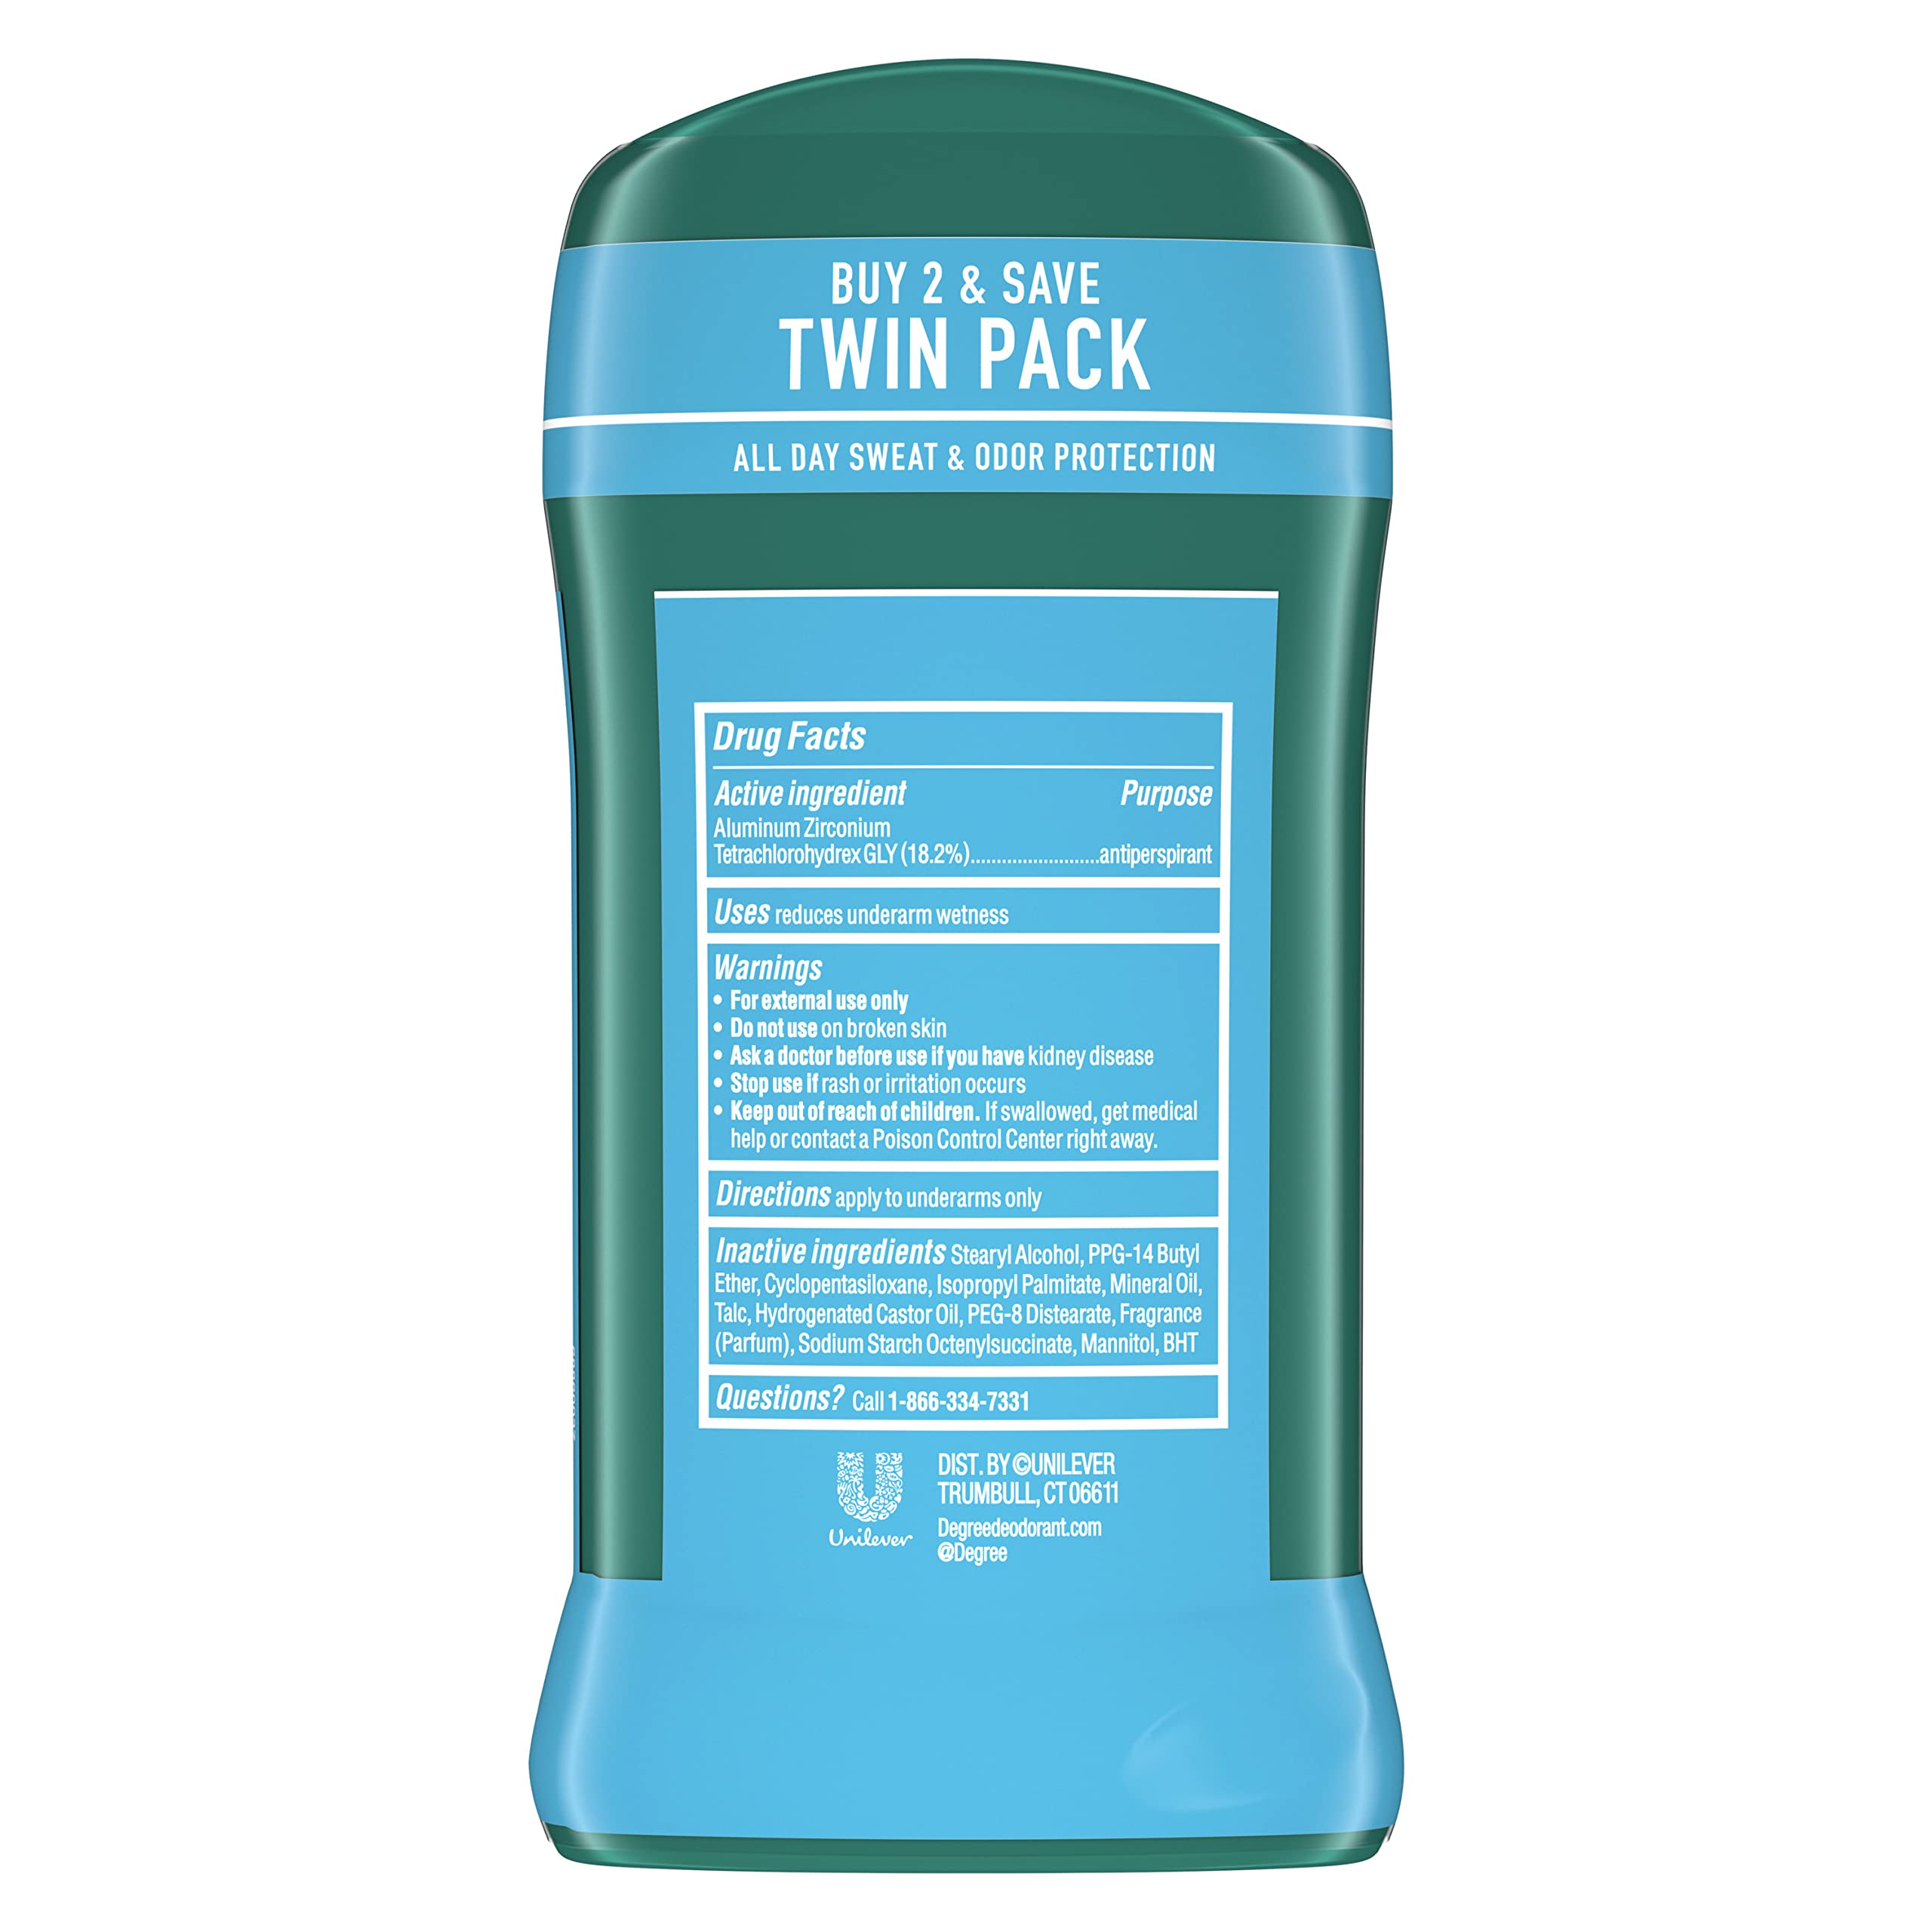 Degree Men Original Antiperspirant Deodorant 48-Hour Sweat & Odor Protection Cool Rush Antiperspirant For Men 2.7 oz Twin Pack